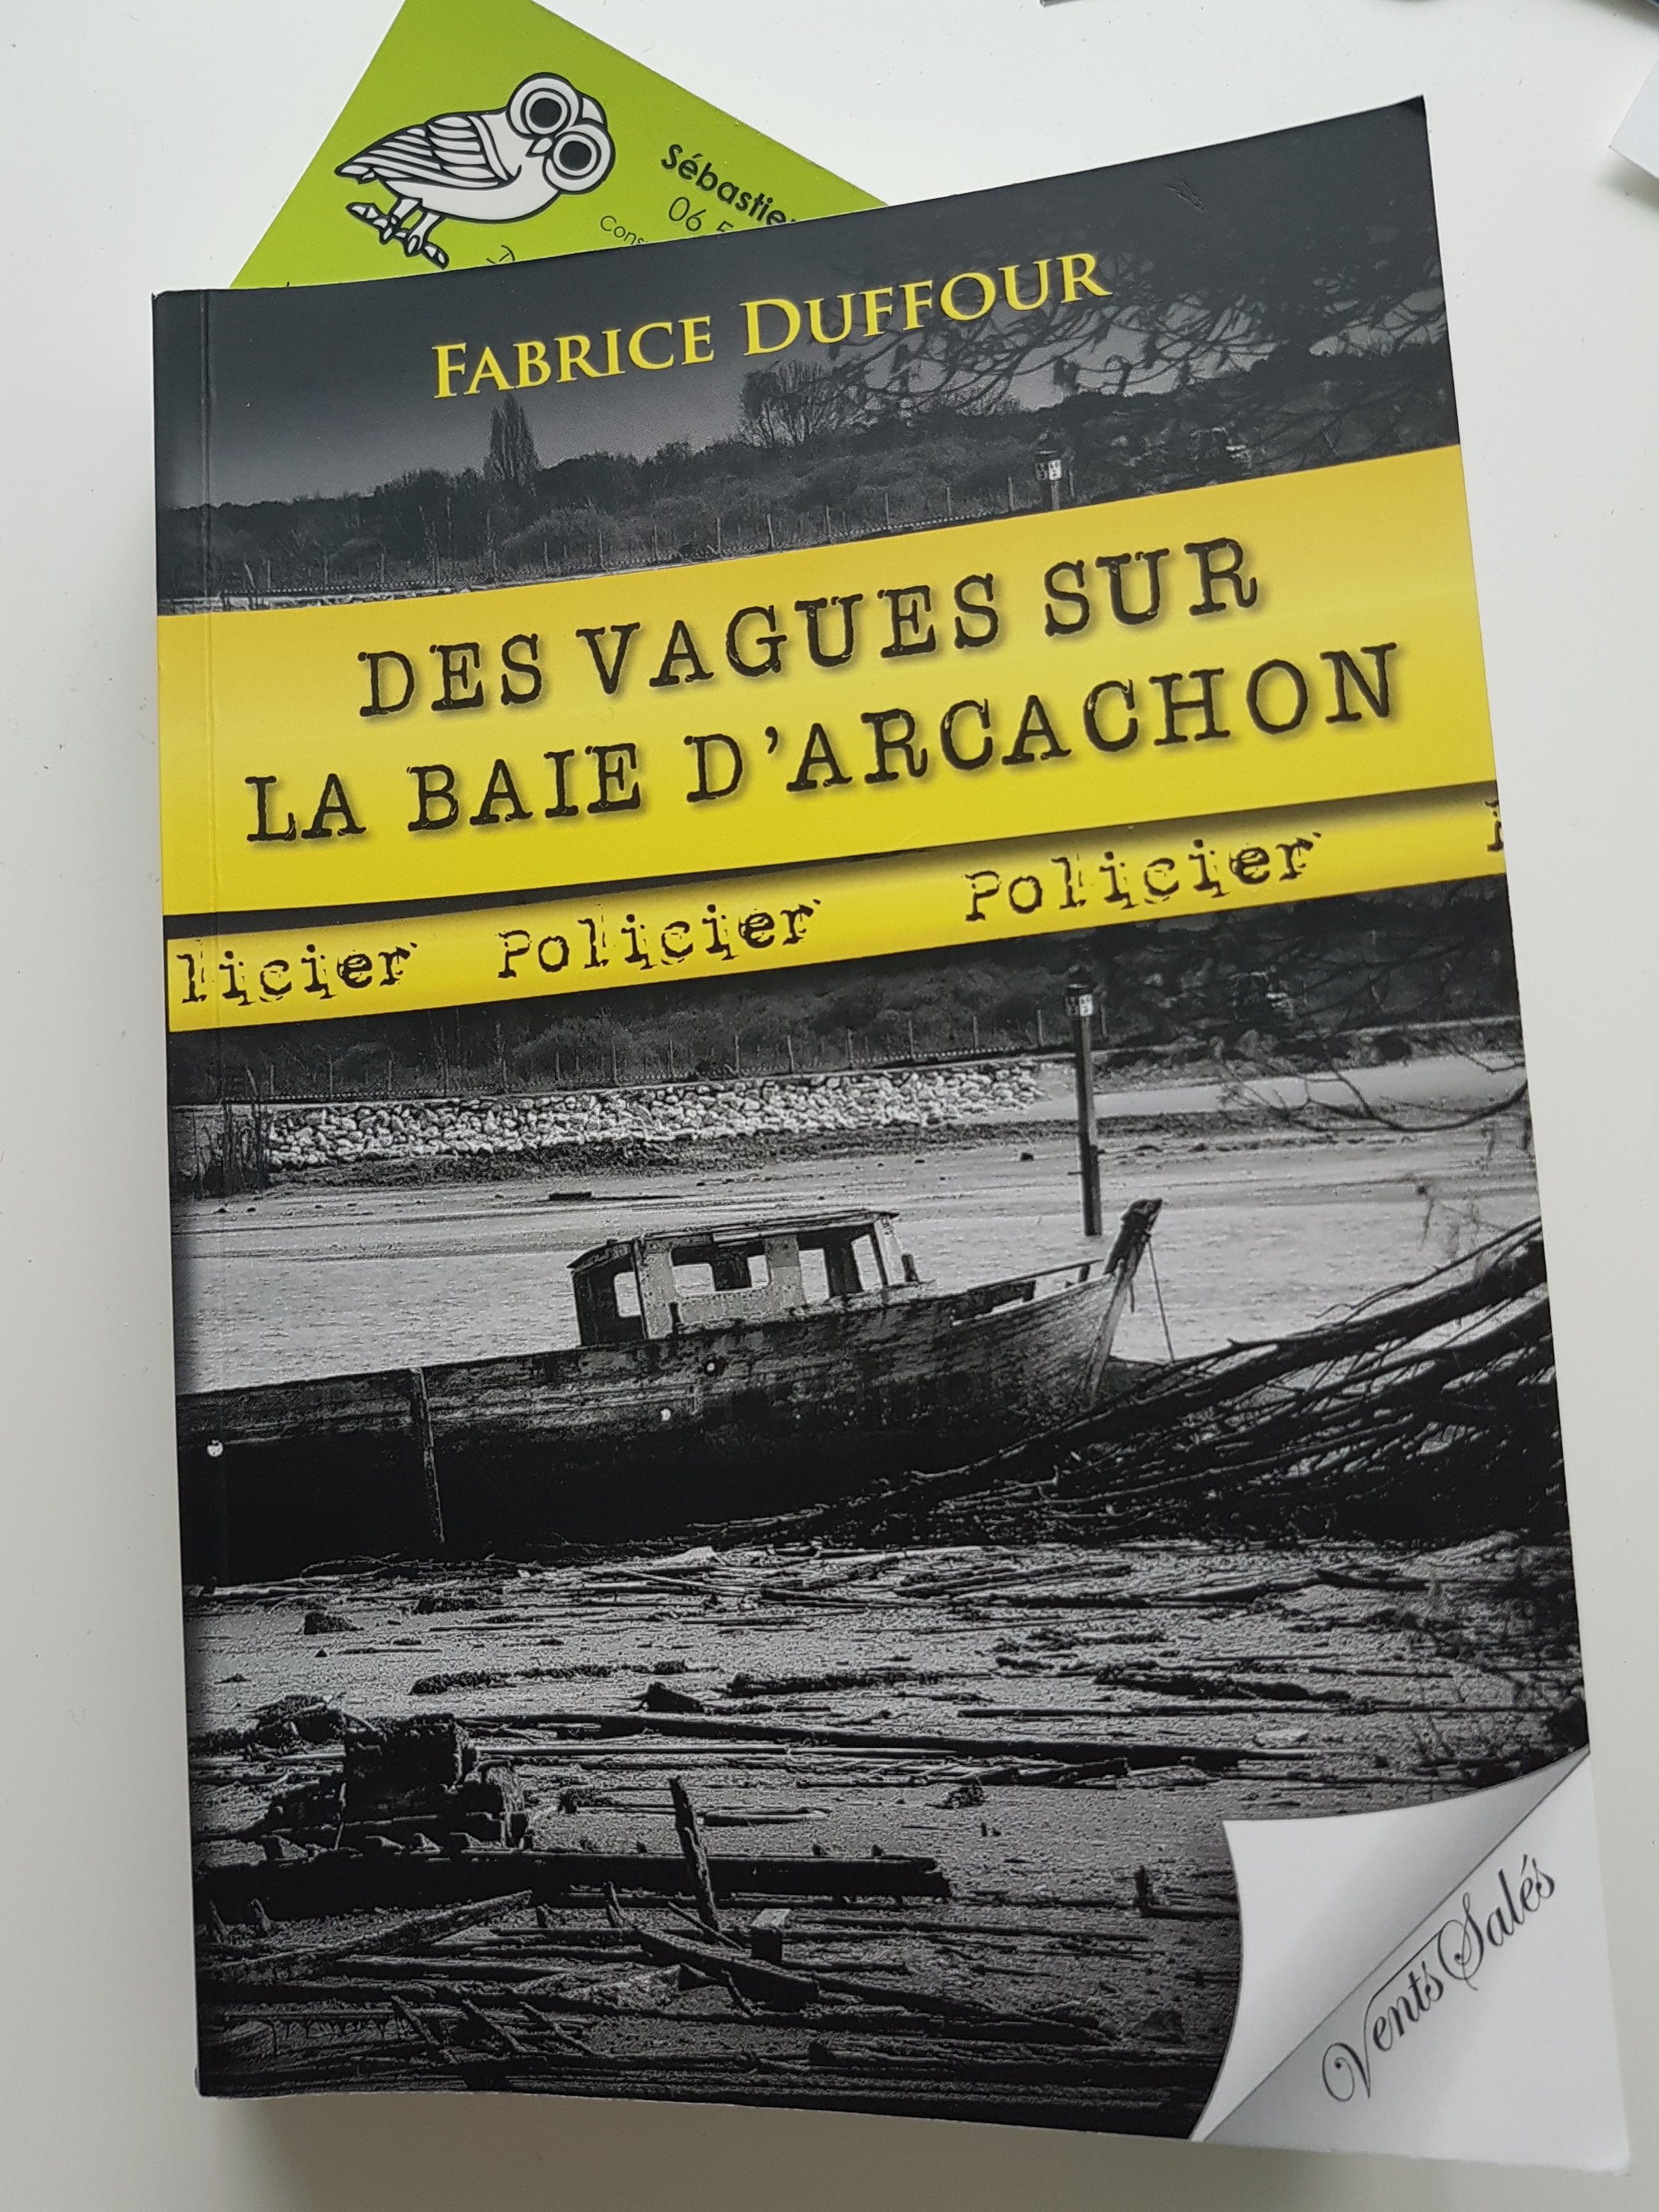 Des vagues sur le Baie d' Arcachon - Fabrice Duffour